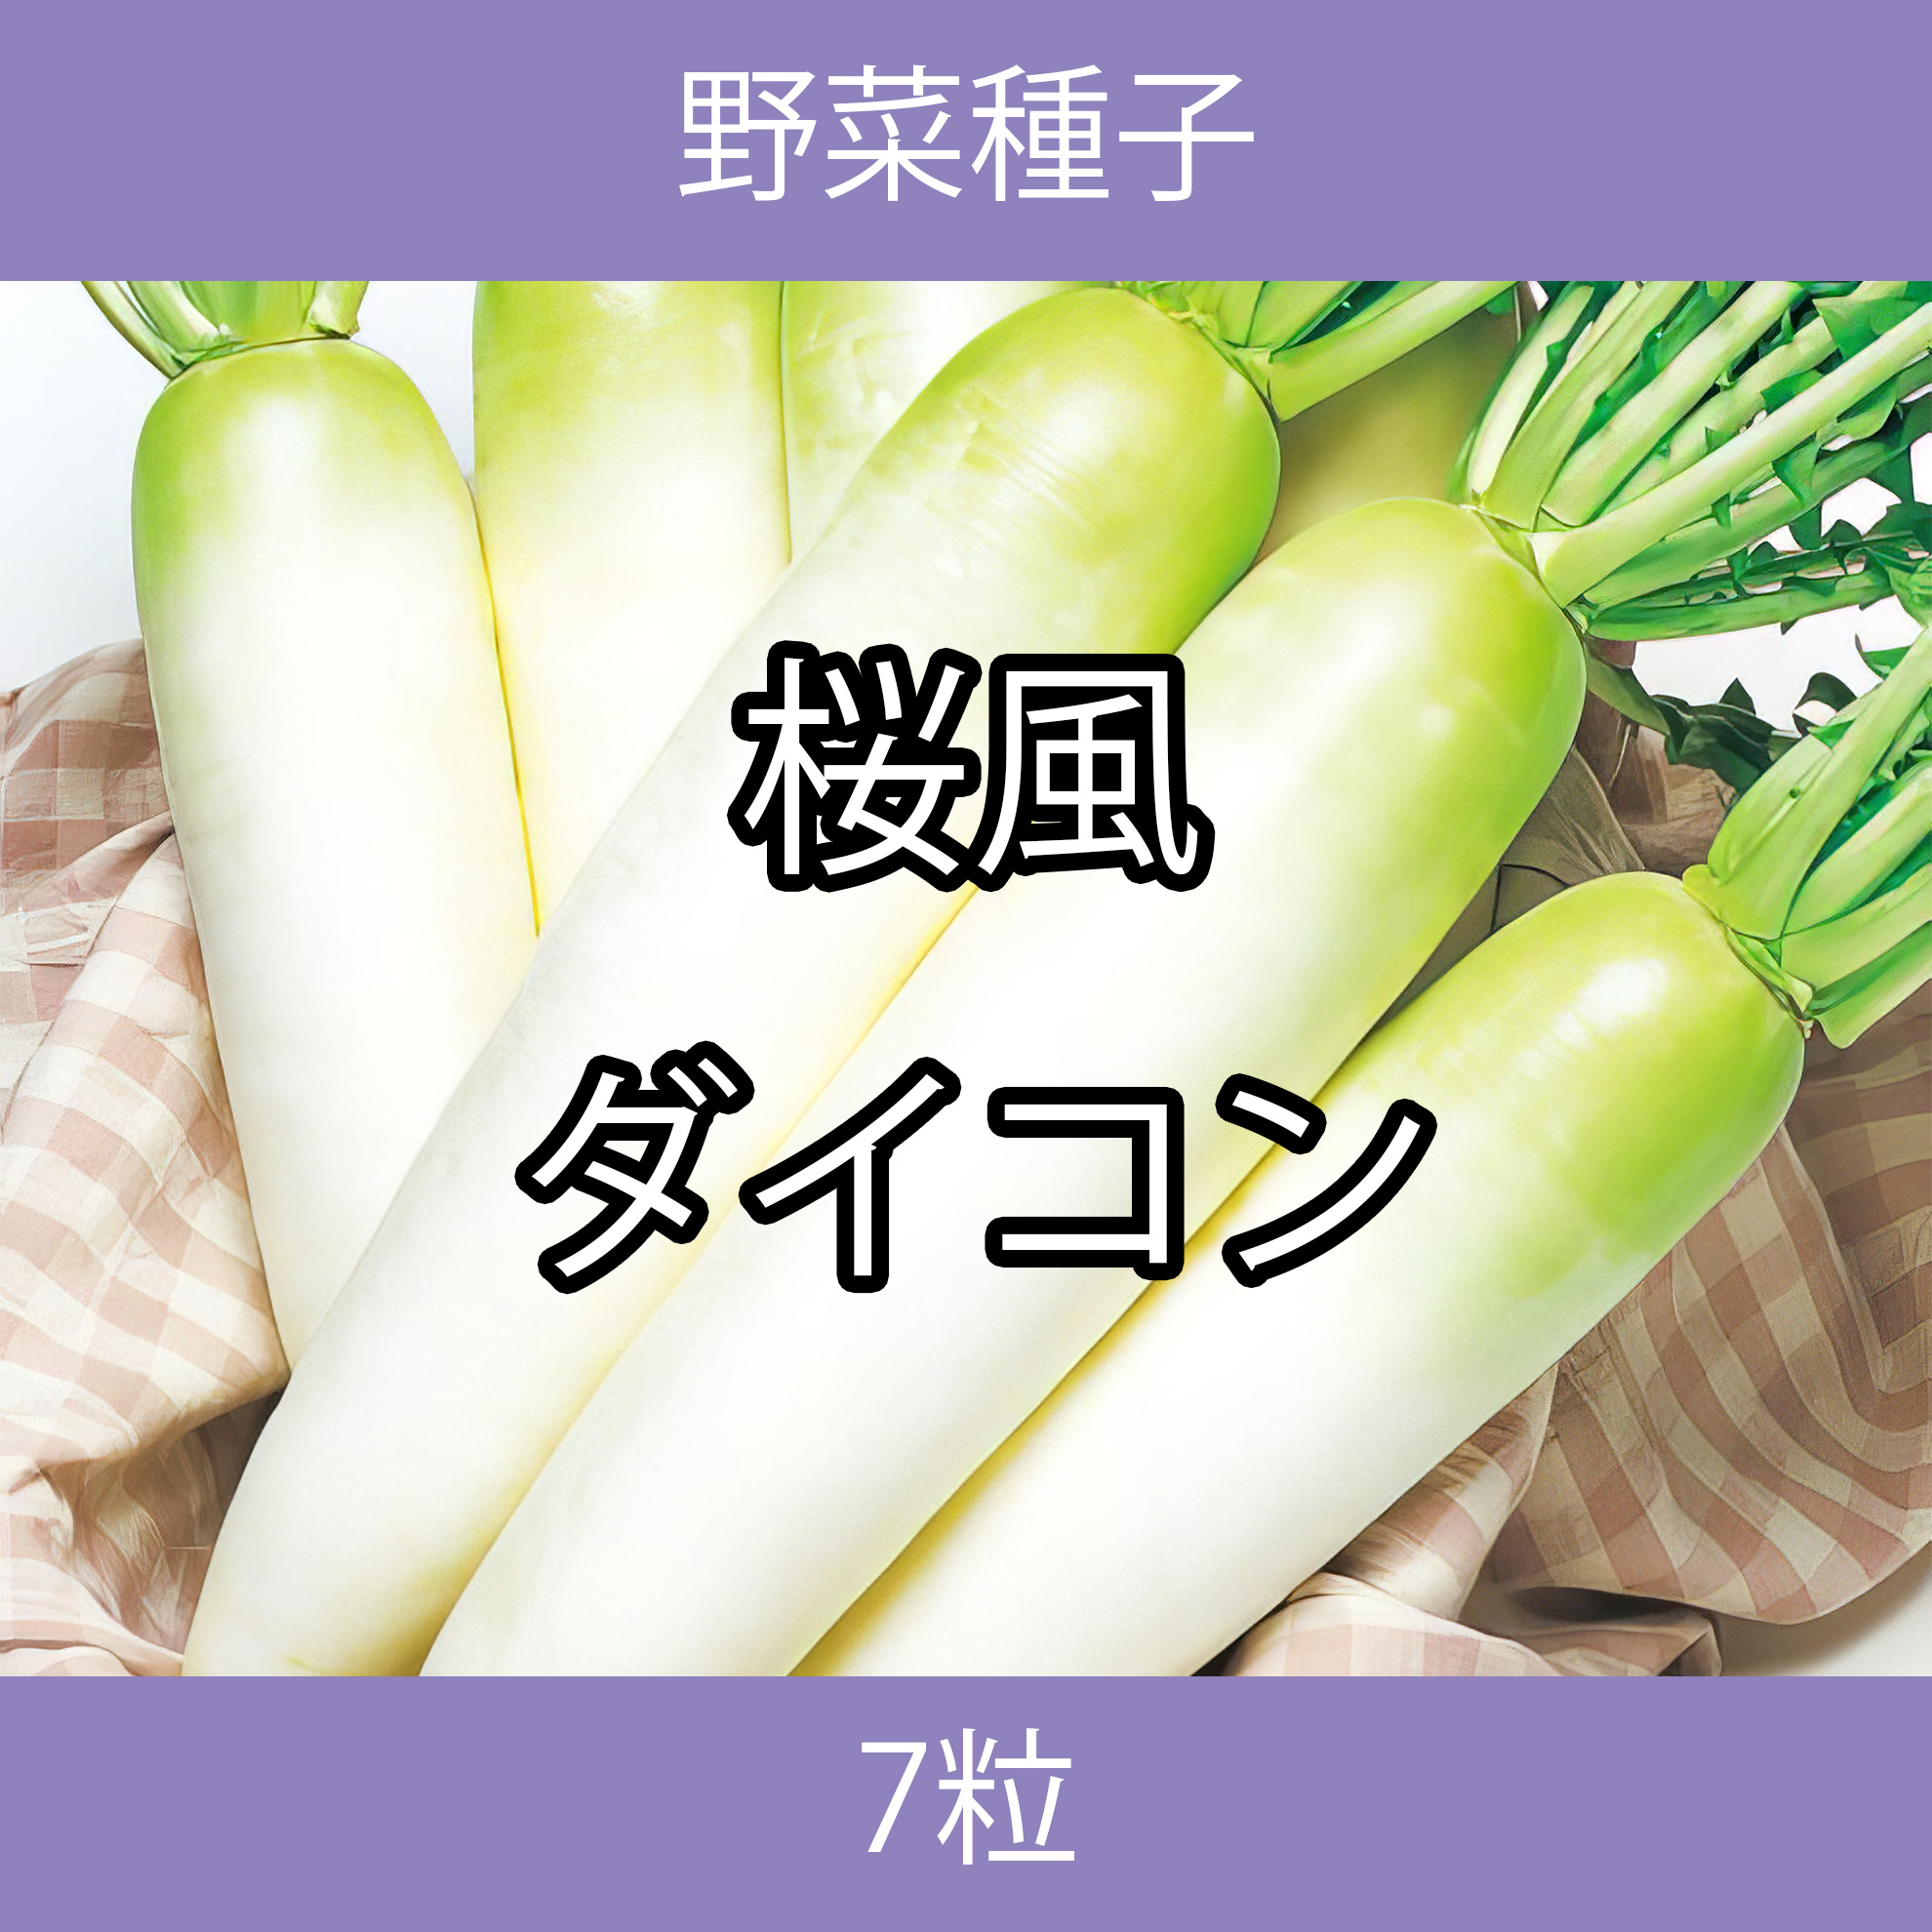 野菜種子 TVF06 桜風ダイコン 7粒